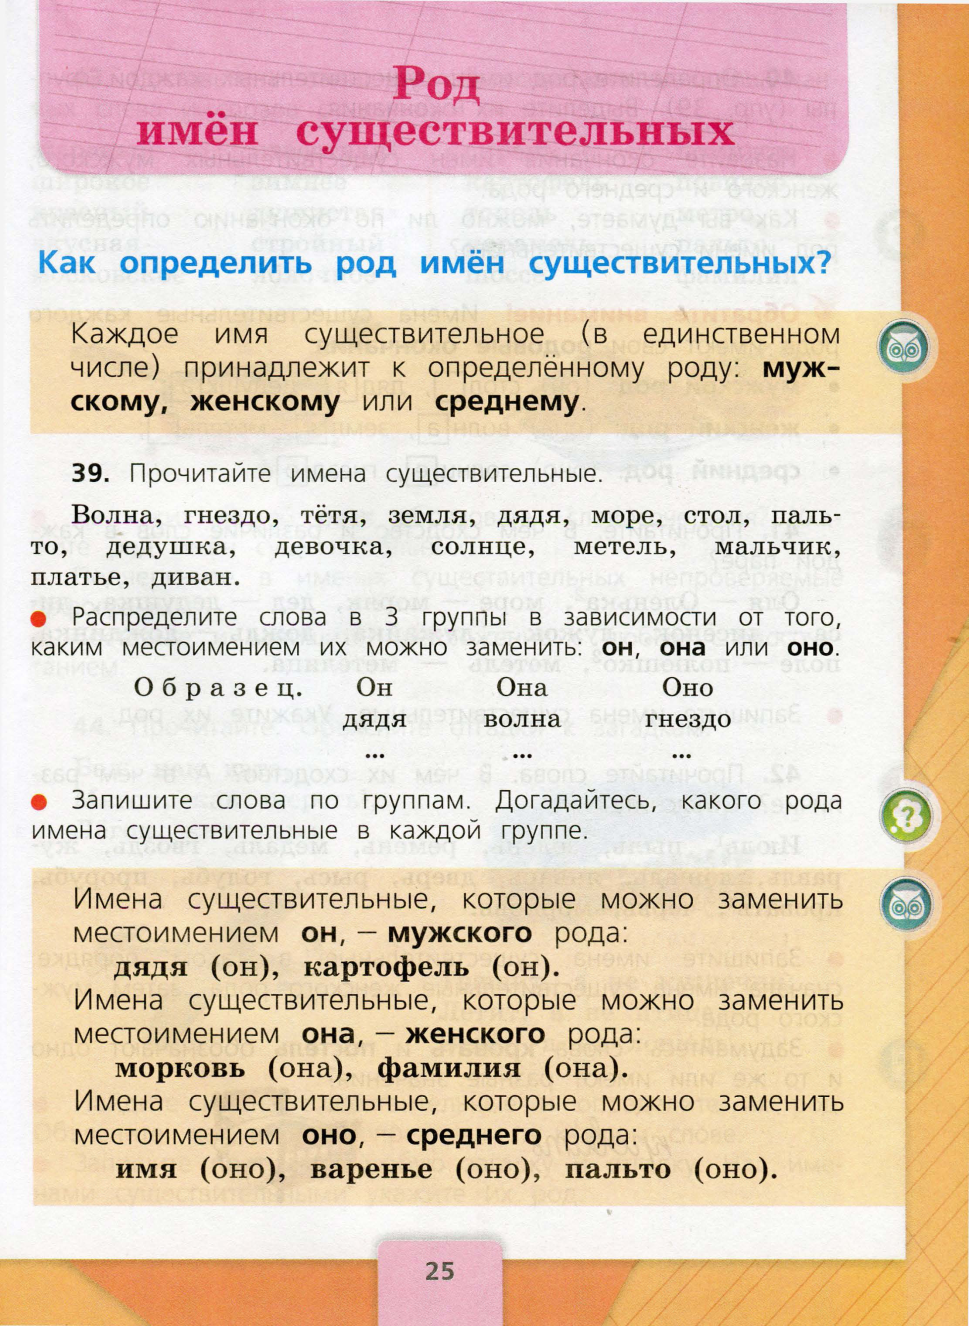 Конспект учебного занятия в 3 классе «Род имени существительного»по программе Школа России